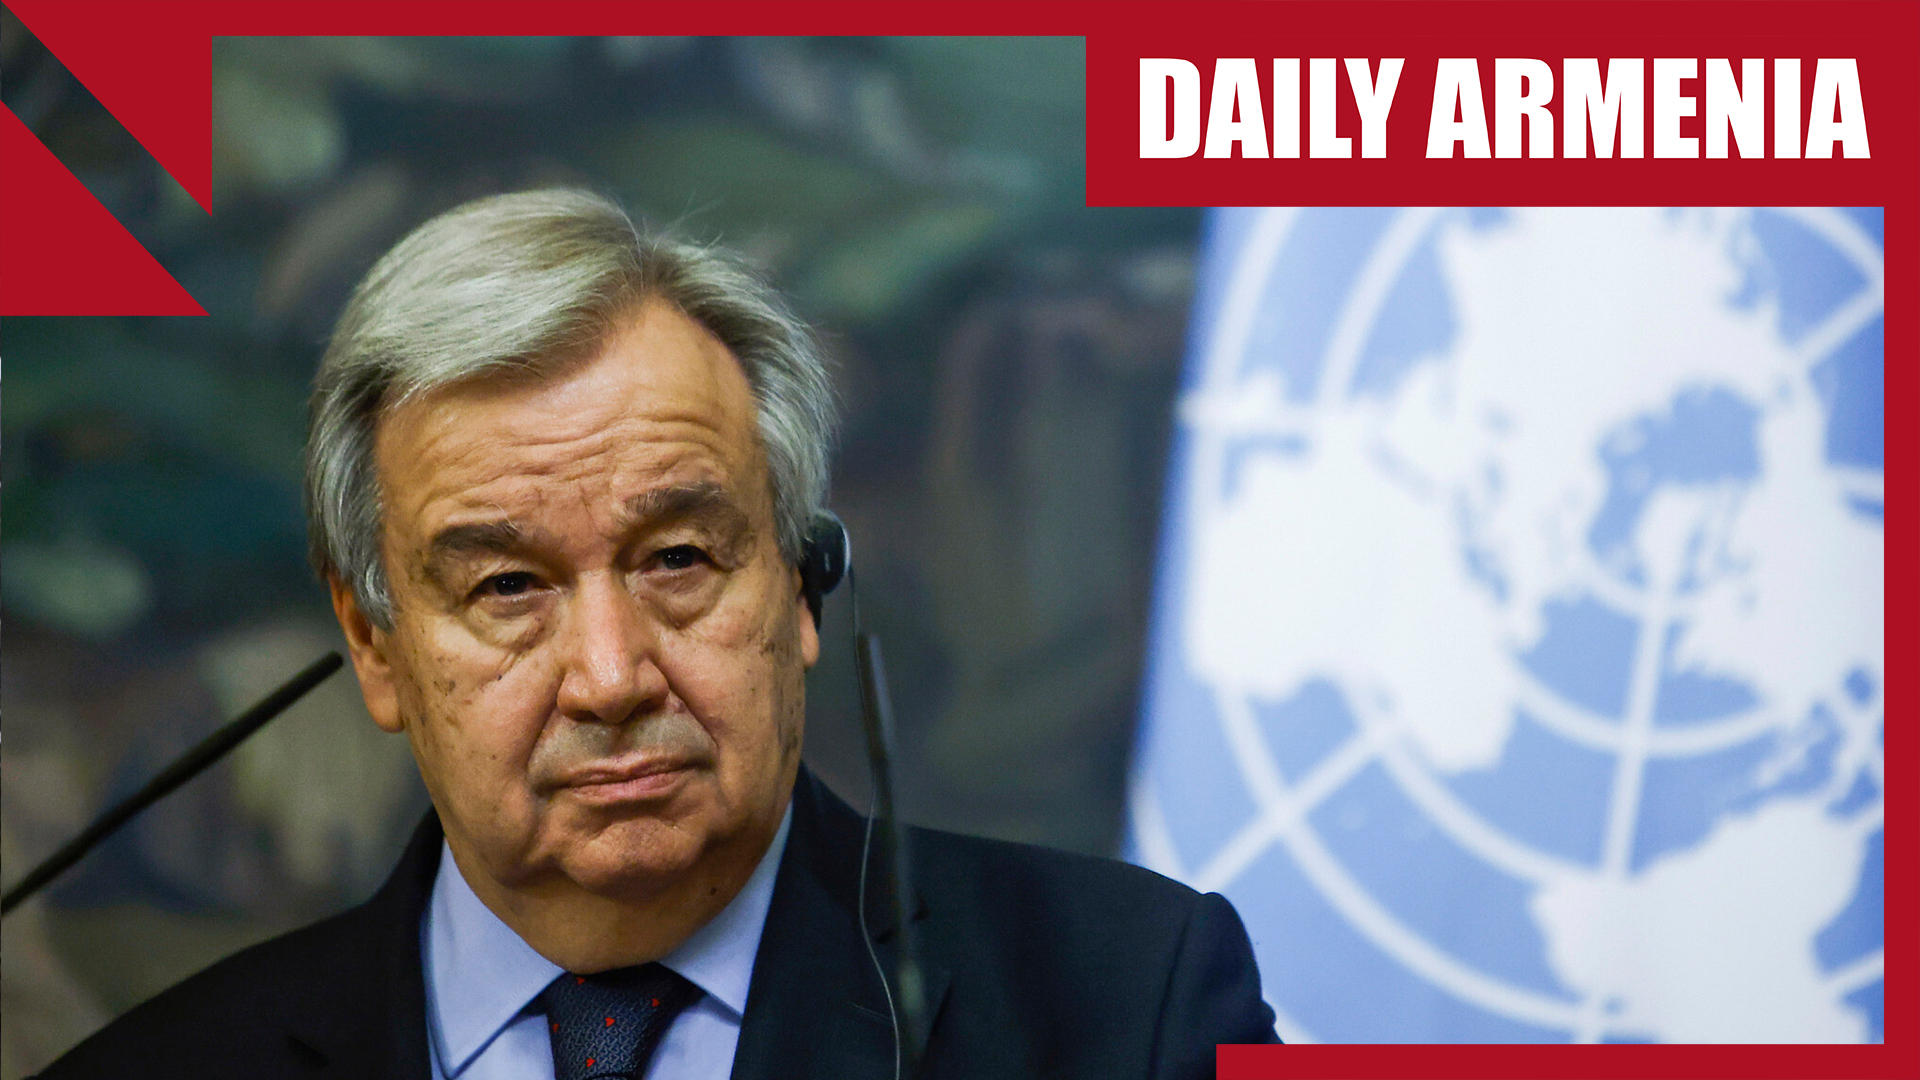 UN chief calls on Azerbaijan to allow aid into Karabakh